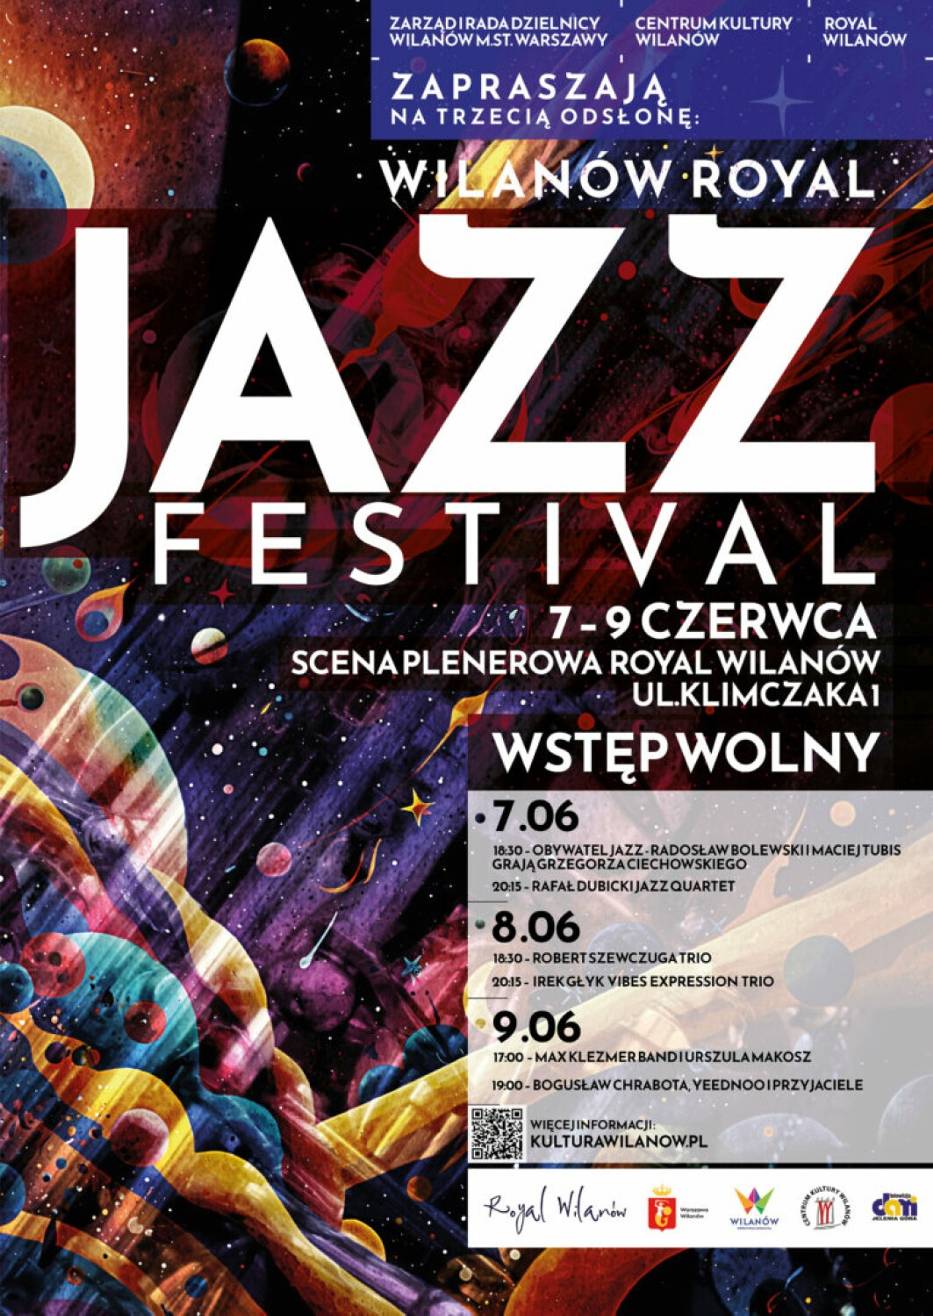 Rusza Wilanów Royal Jazz Festiwal. Przed nami 3 dni jazzowych koncertów na Wilanowie ( 7-9 czerwca)